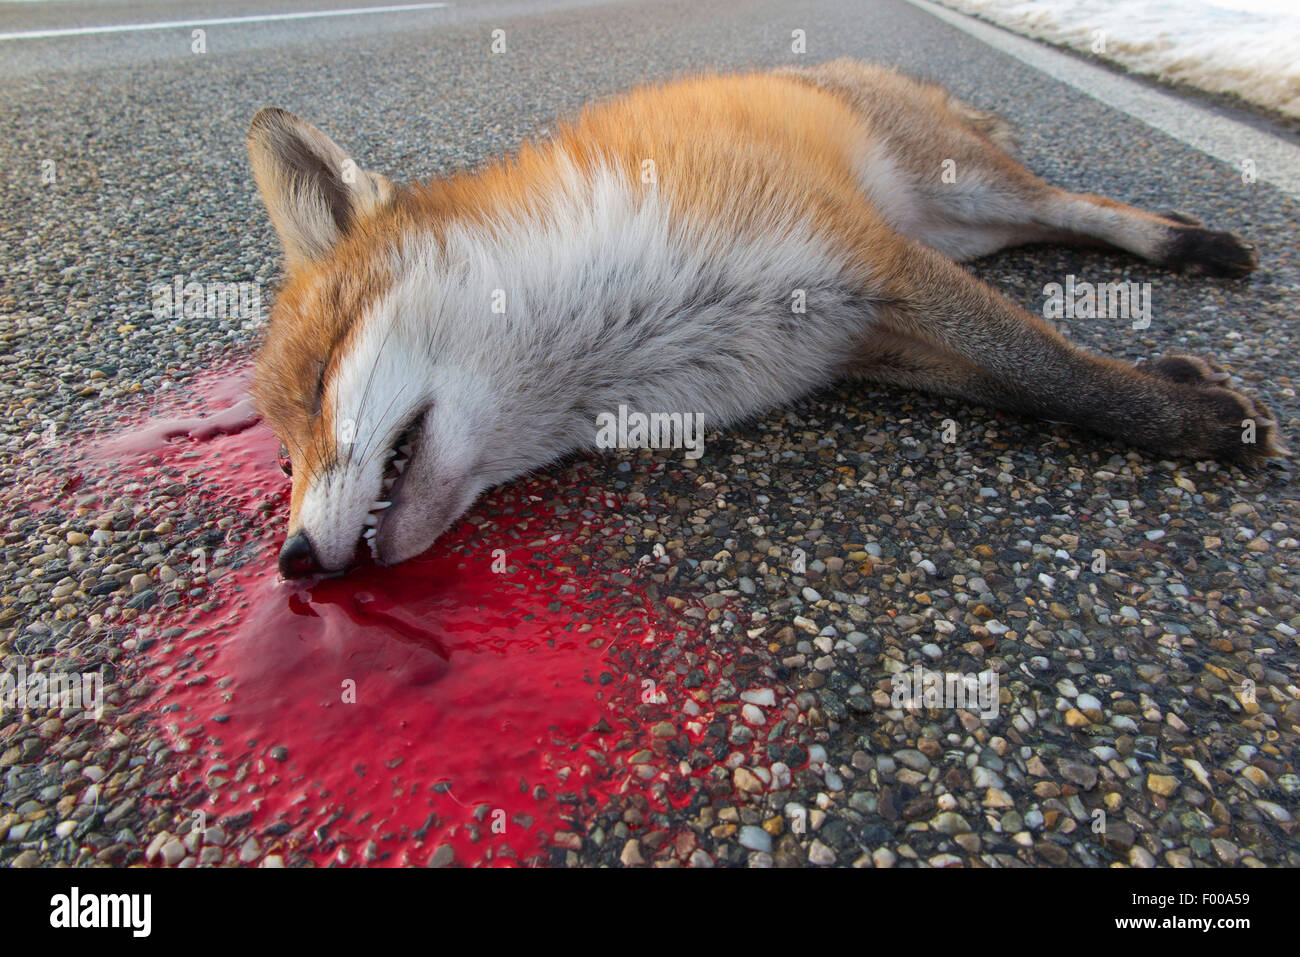 roter Fuchs (Vulpes Vulpes), Toten Fuchs liegend in einem Poole von Blut auf der Straße, Straße Unfall, Deutschland, Bayern Stockfoto